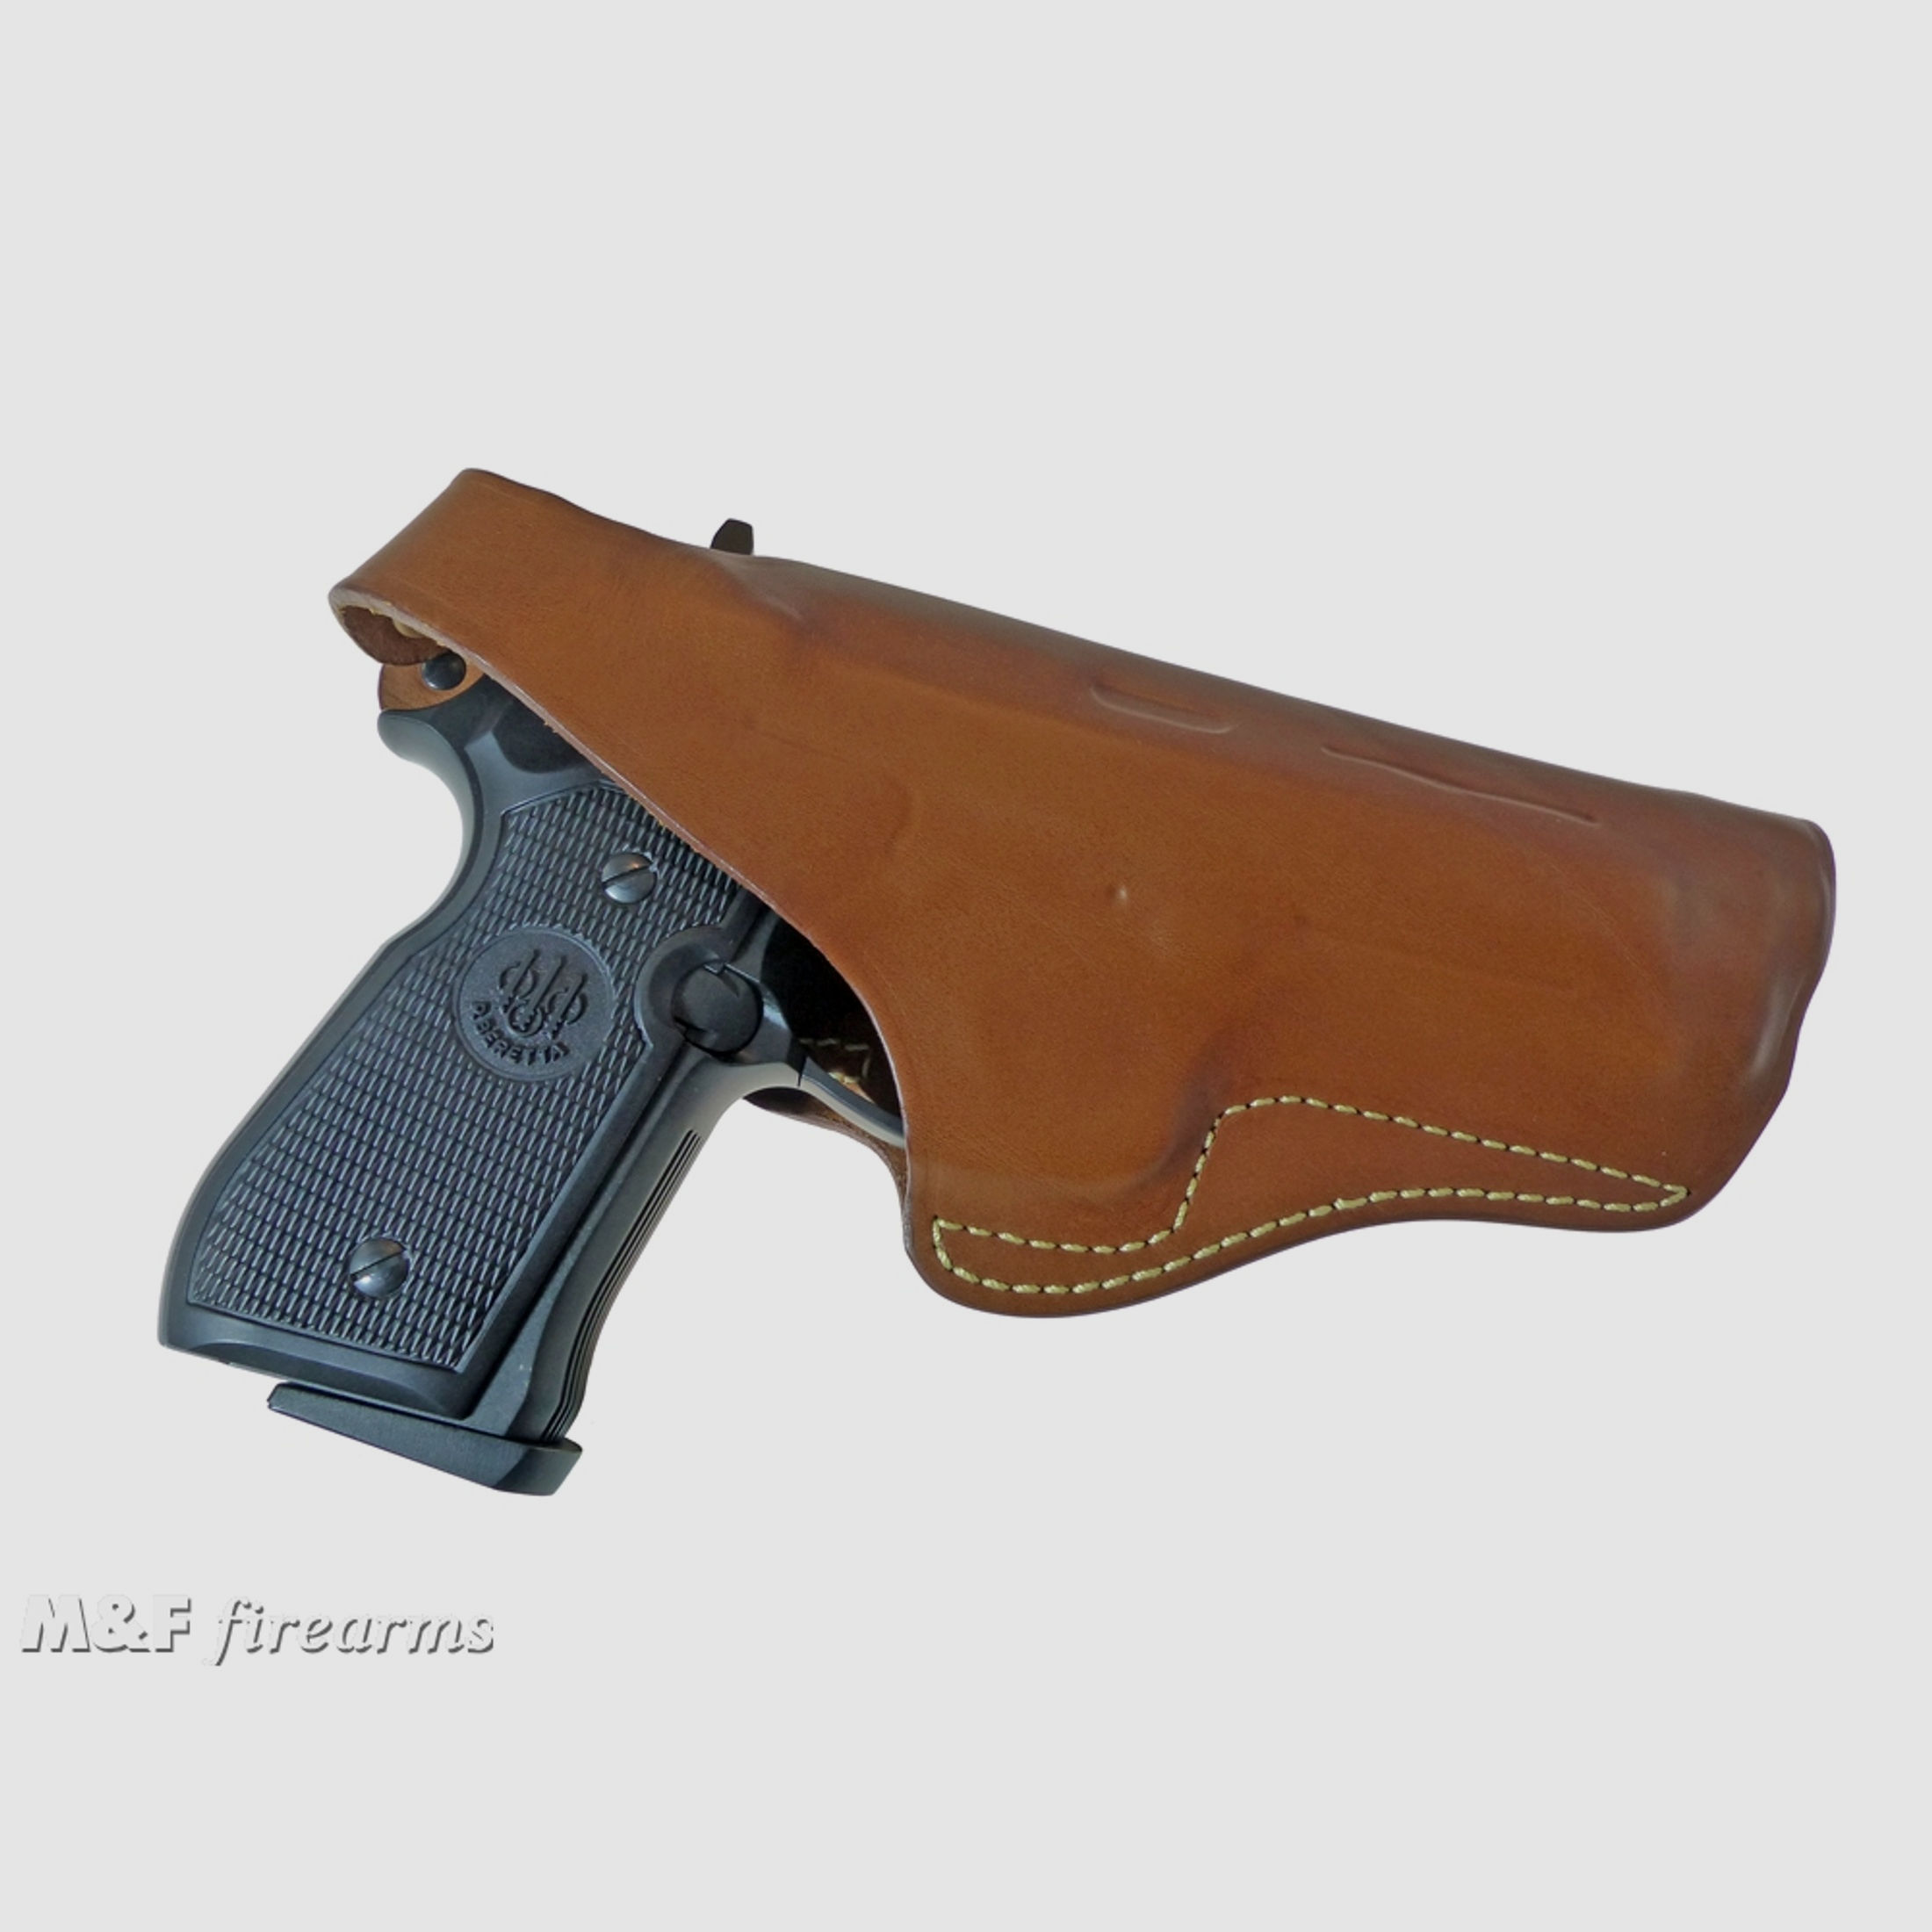 RADAR Lederholster für Beretta Pistole 92F passend auch für Luftdruck- Airsoft- und Schreckschussvarianten